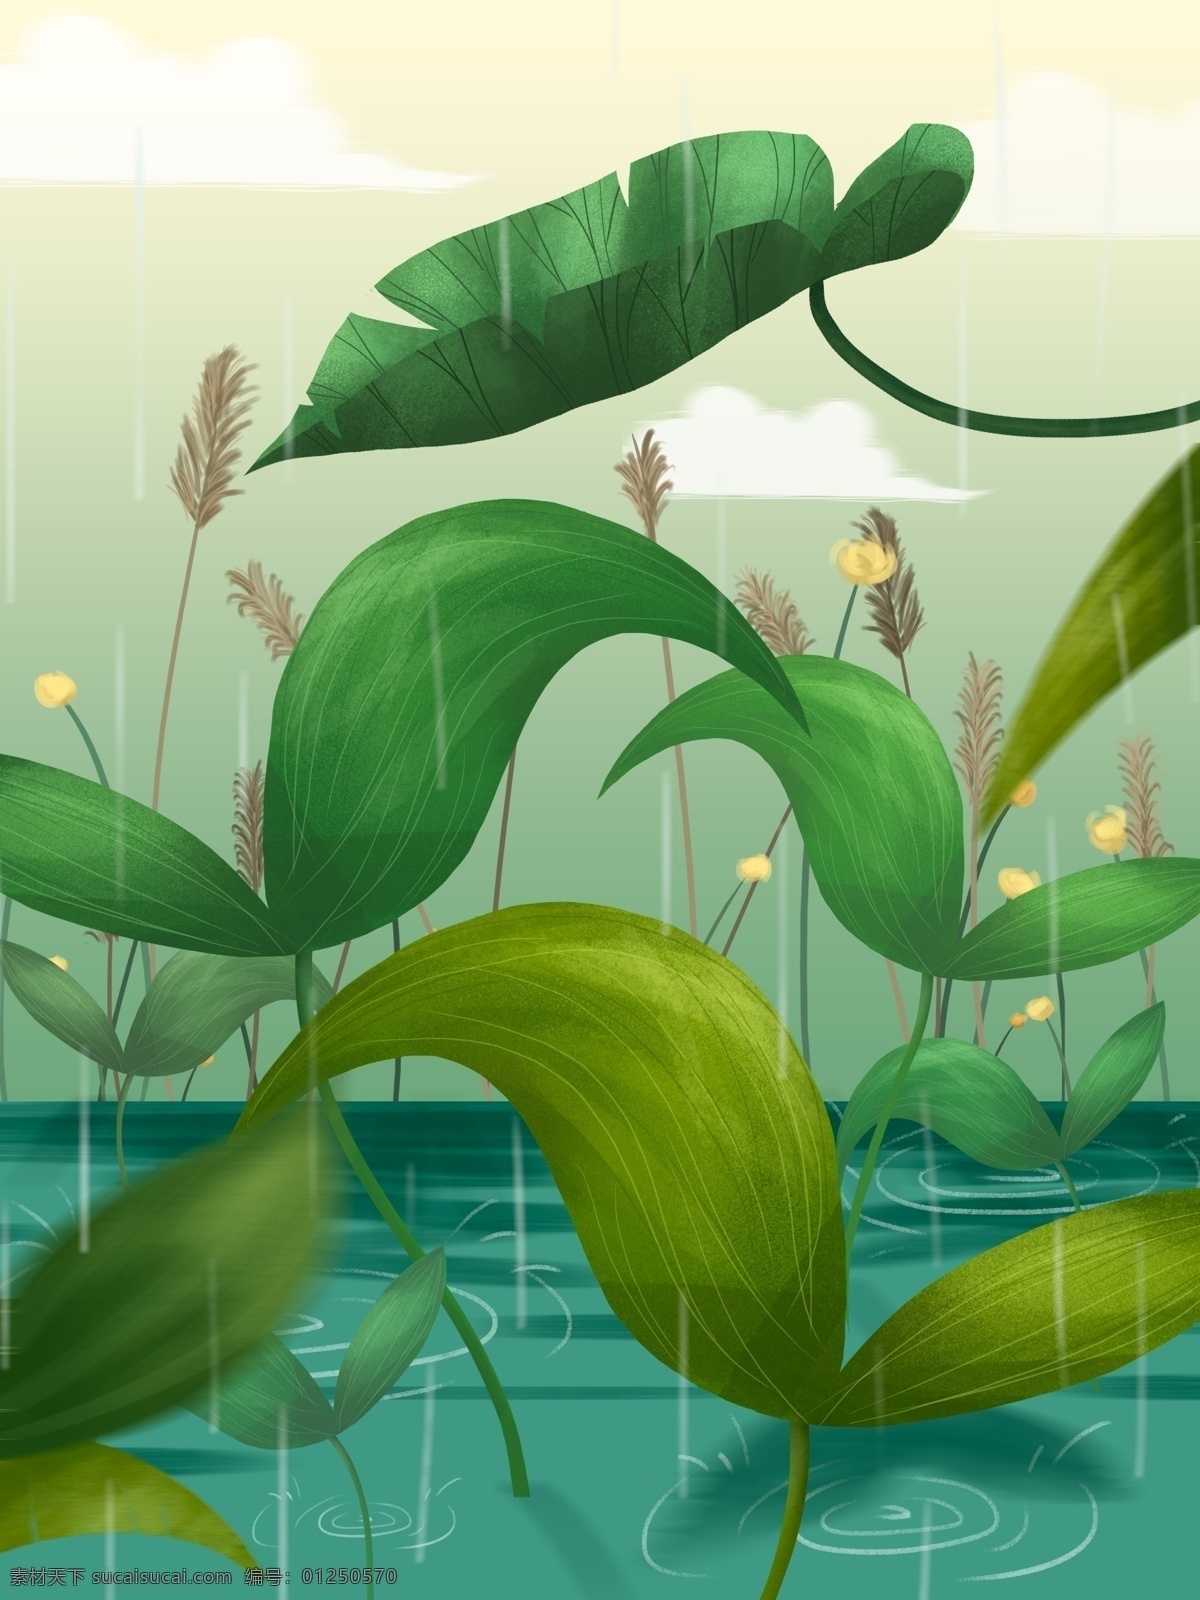 小雨 节气 河边 植物 插画 背景 花卉背景 小清新背景 植物背景 植物花卉 水彩背景 通用背景